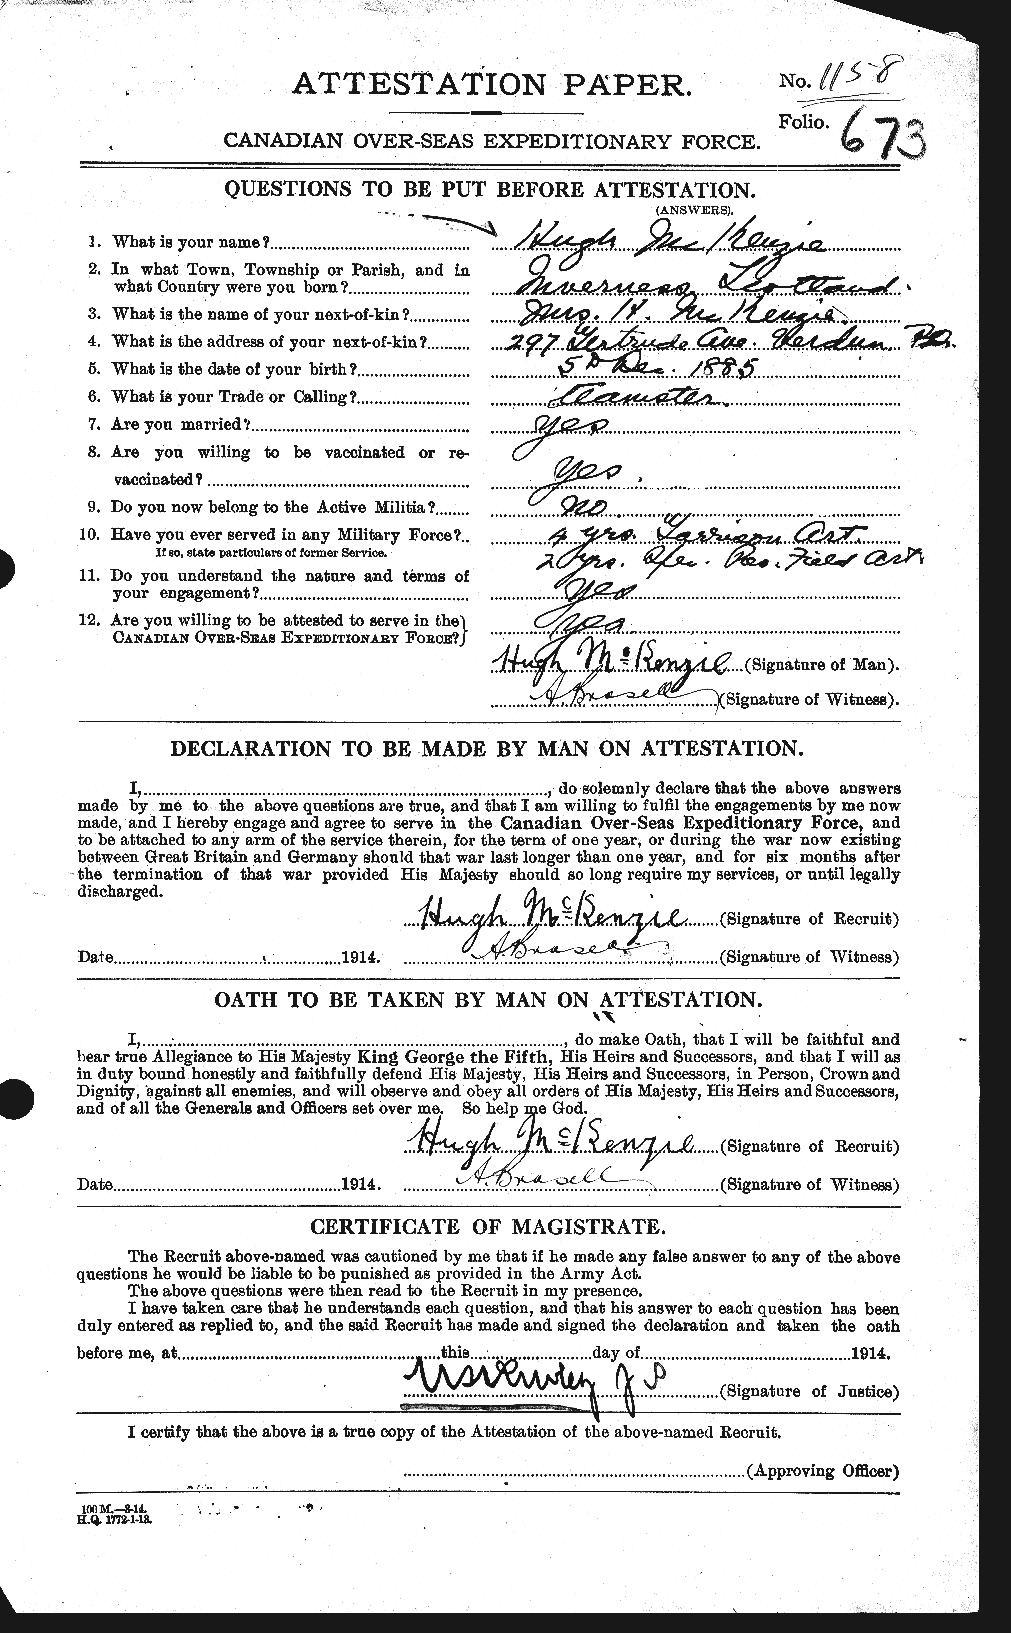 Dossiers du Personnel de la Première Guerre mondiale - CEC 206292a